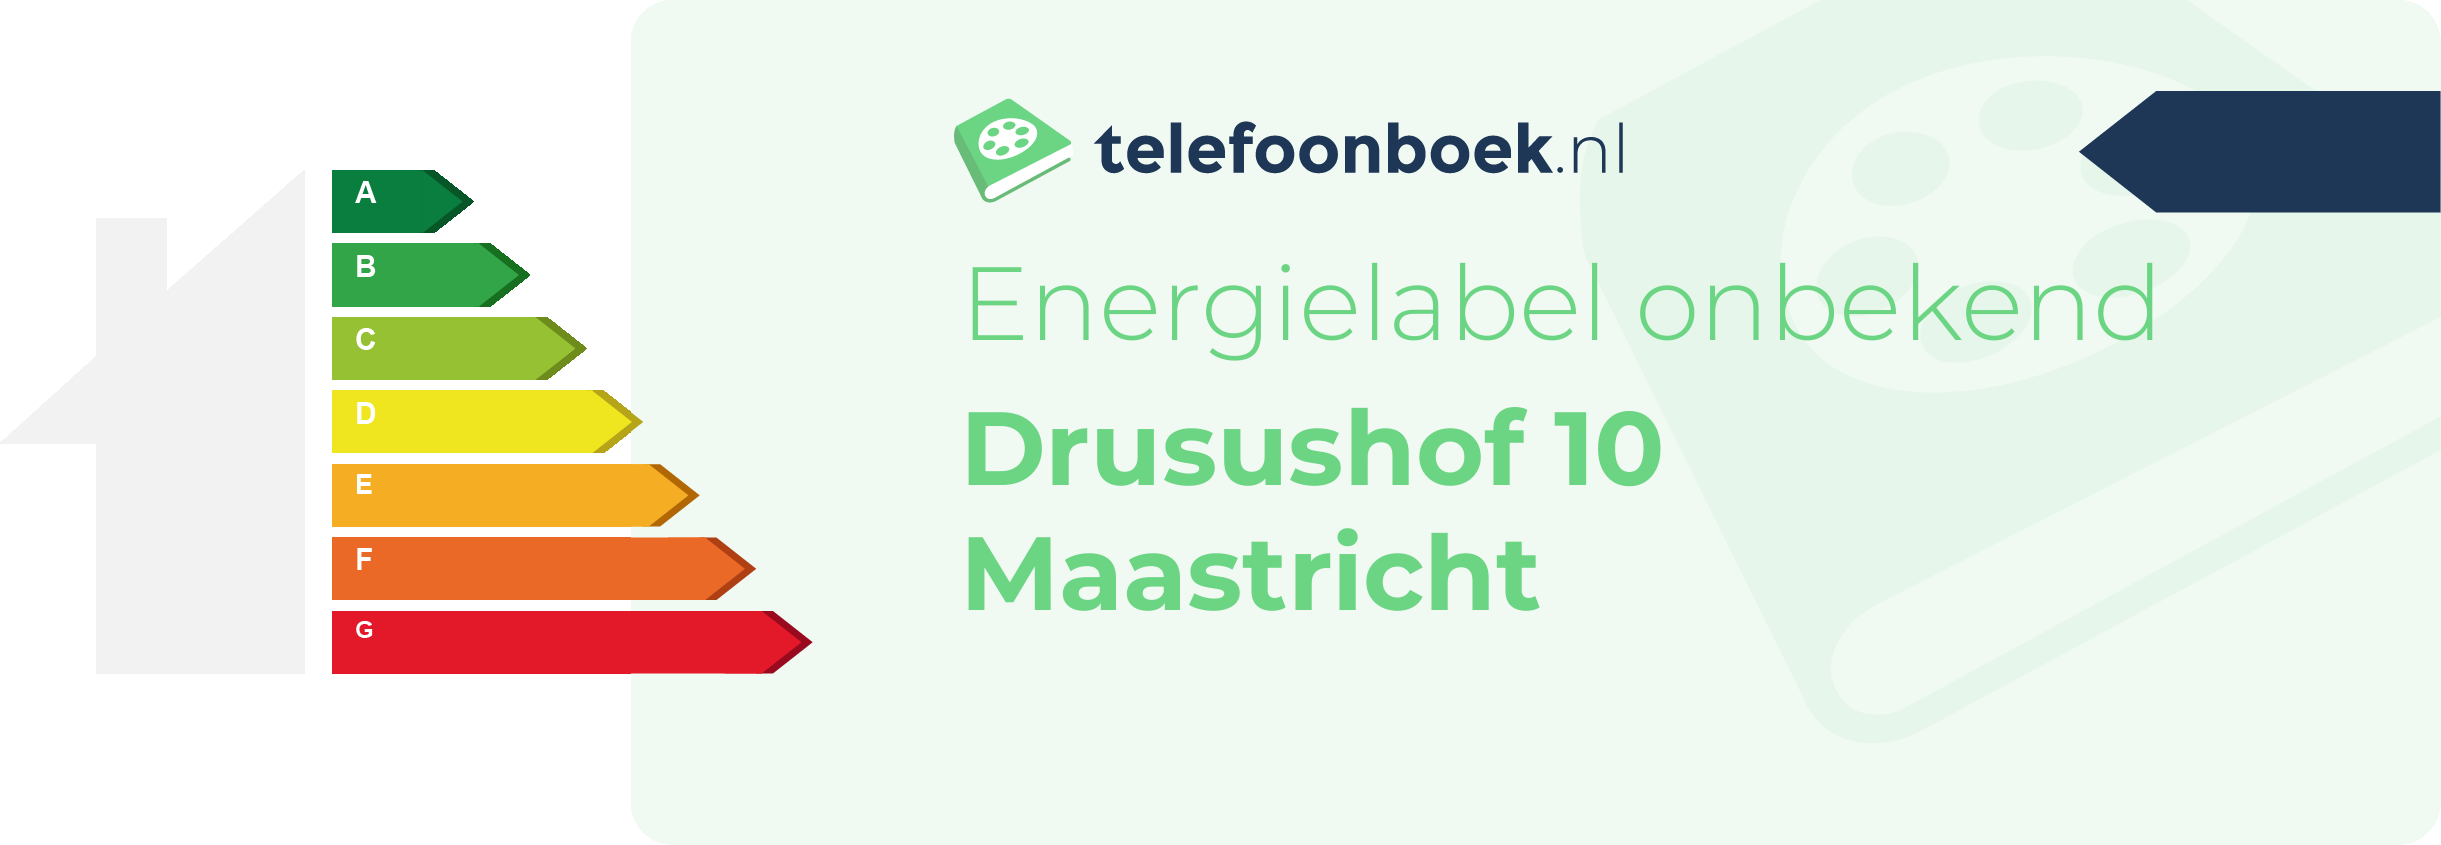 Energielabel Drusushof 10 Maastricht